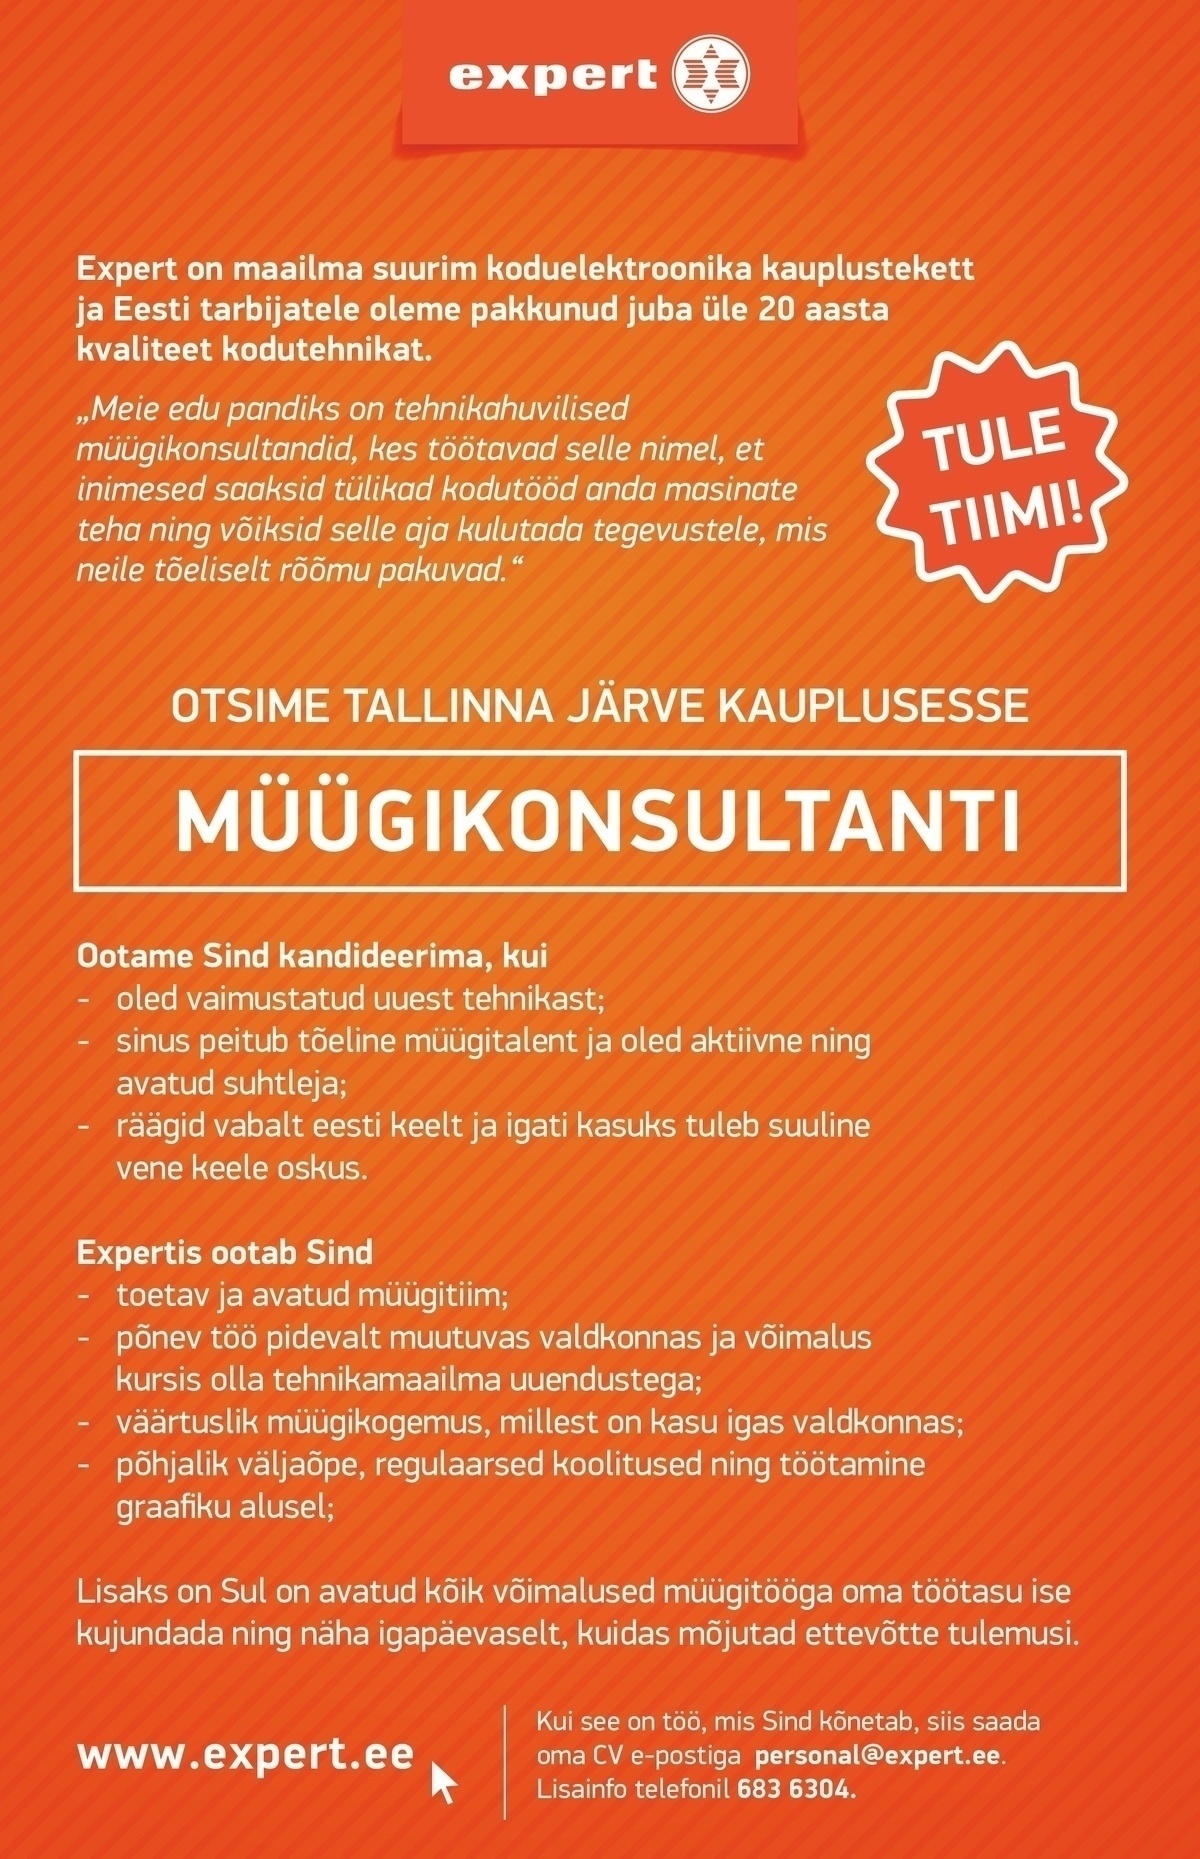 Expert Eesti OÜ Müügikonsultant (Tallinnas Järve keskuse kaupluses)